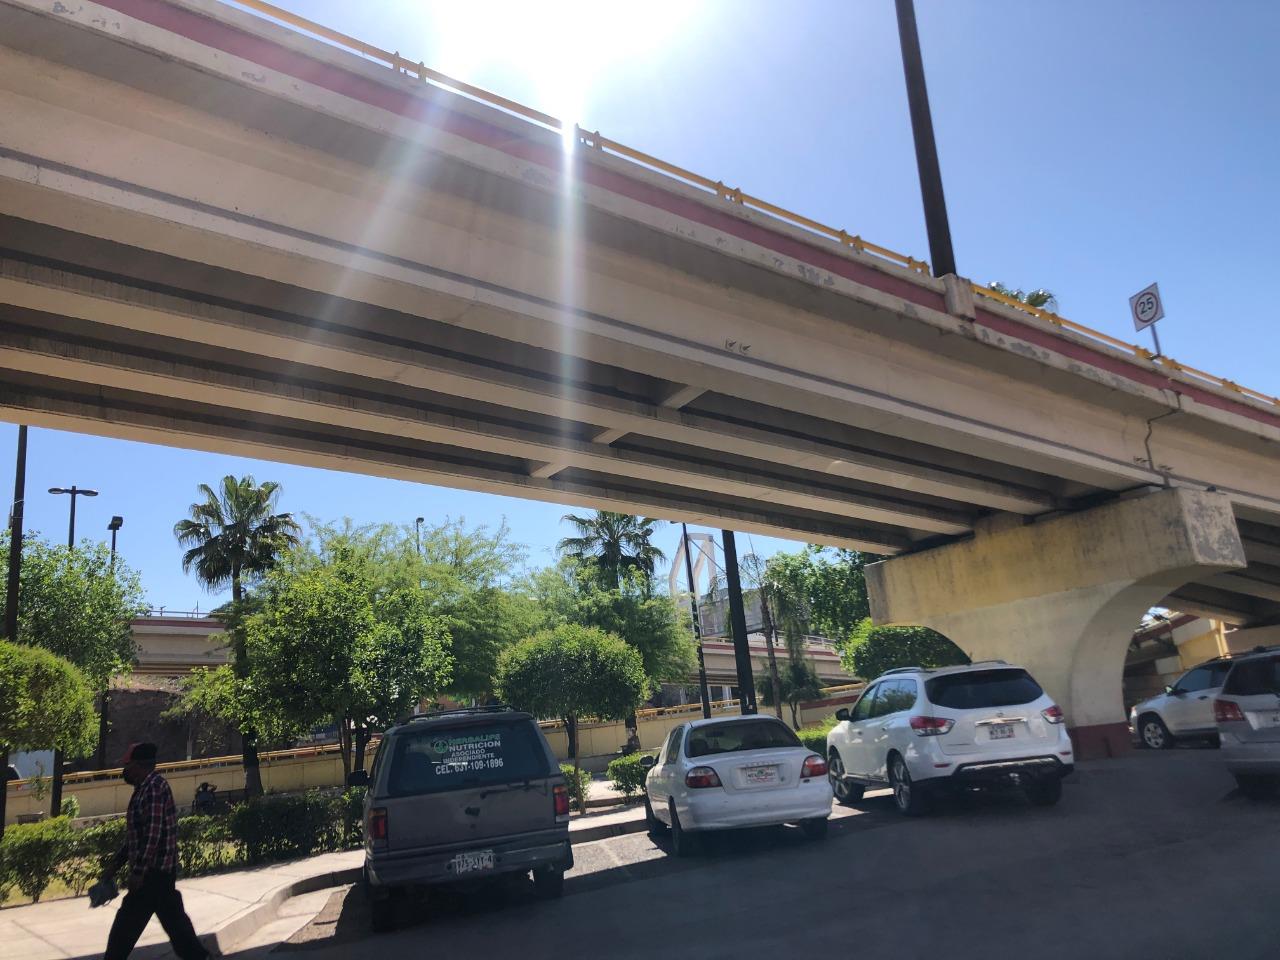 Podrían realizar recorrido para inspeccionar puentes y distribuidores viales en Nogales